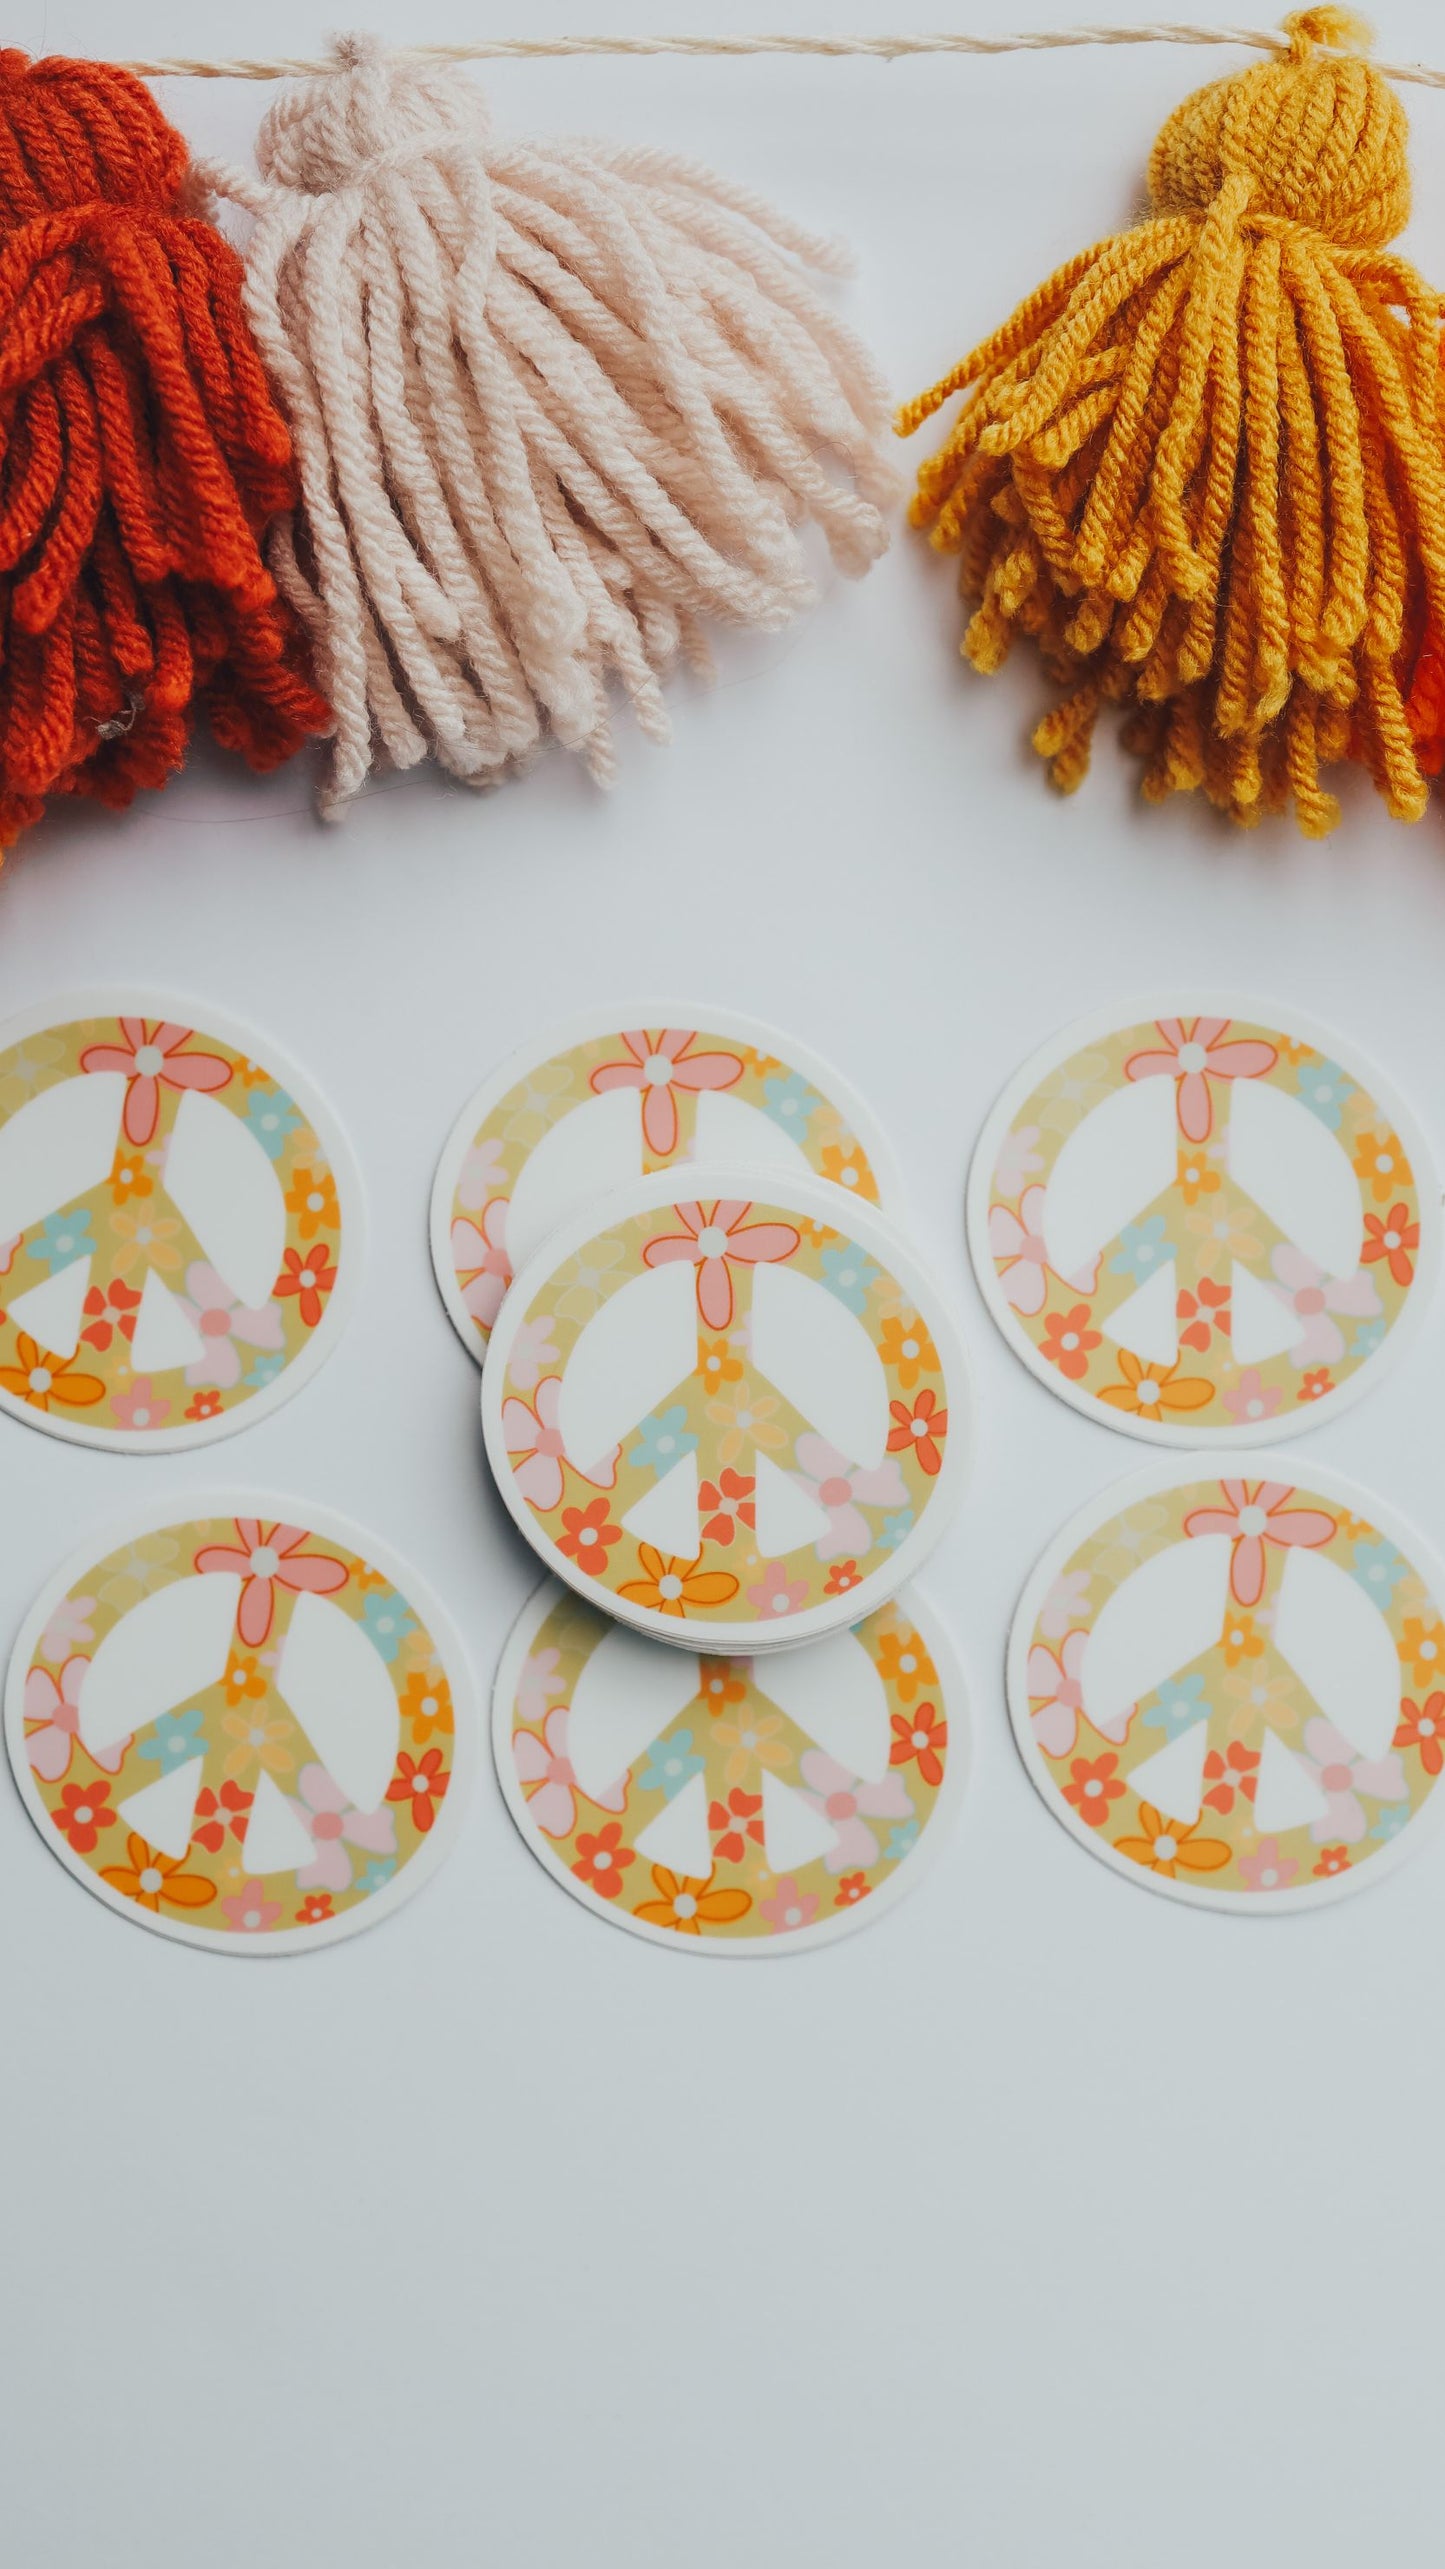 peace sign sticker, groovy sticker, hippie sticker, 70's sticker, retro sticker.